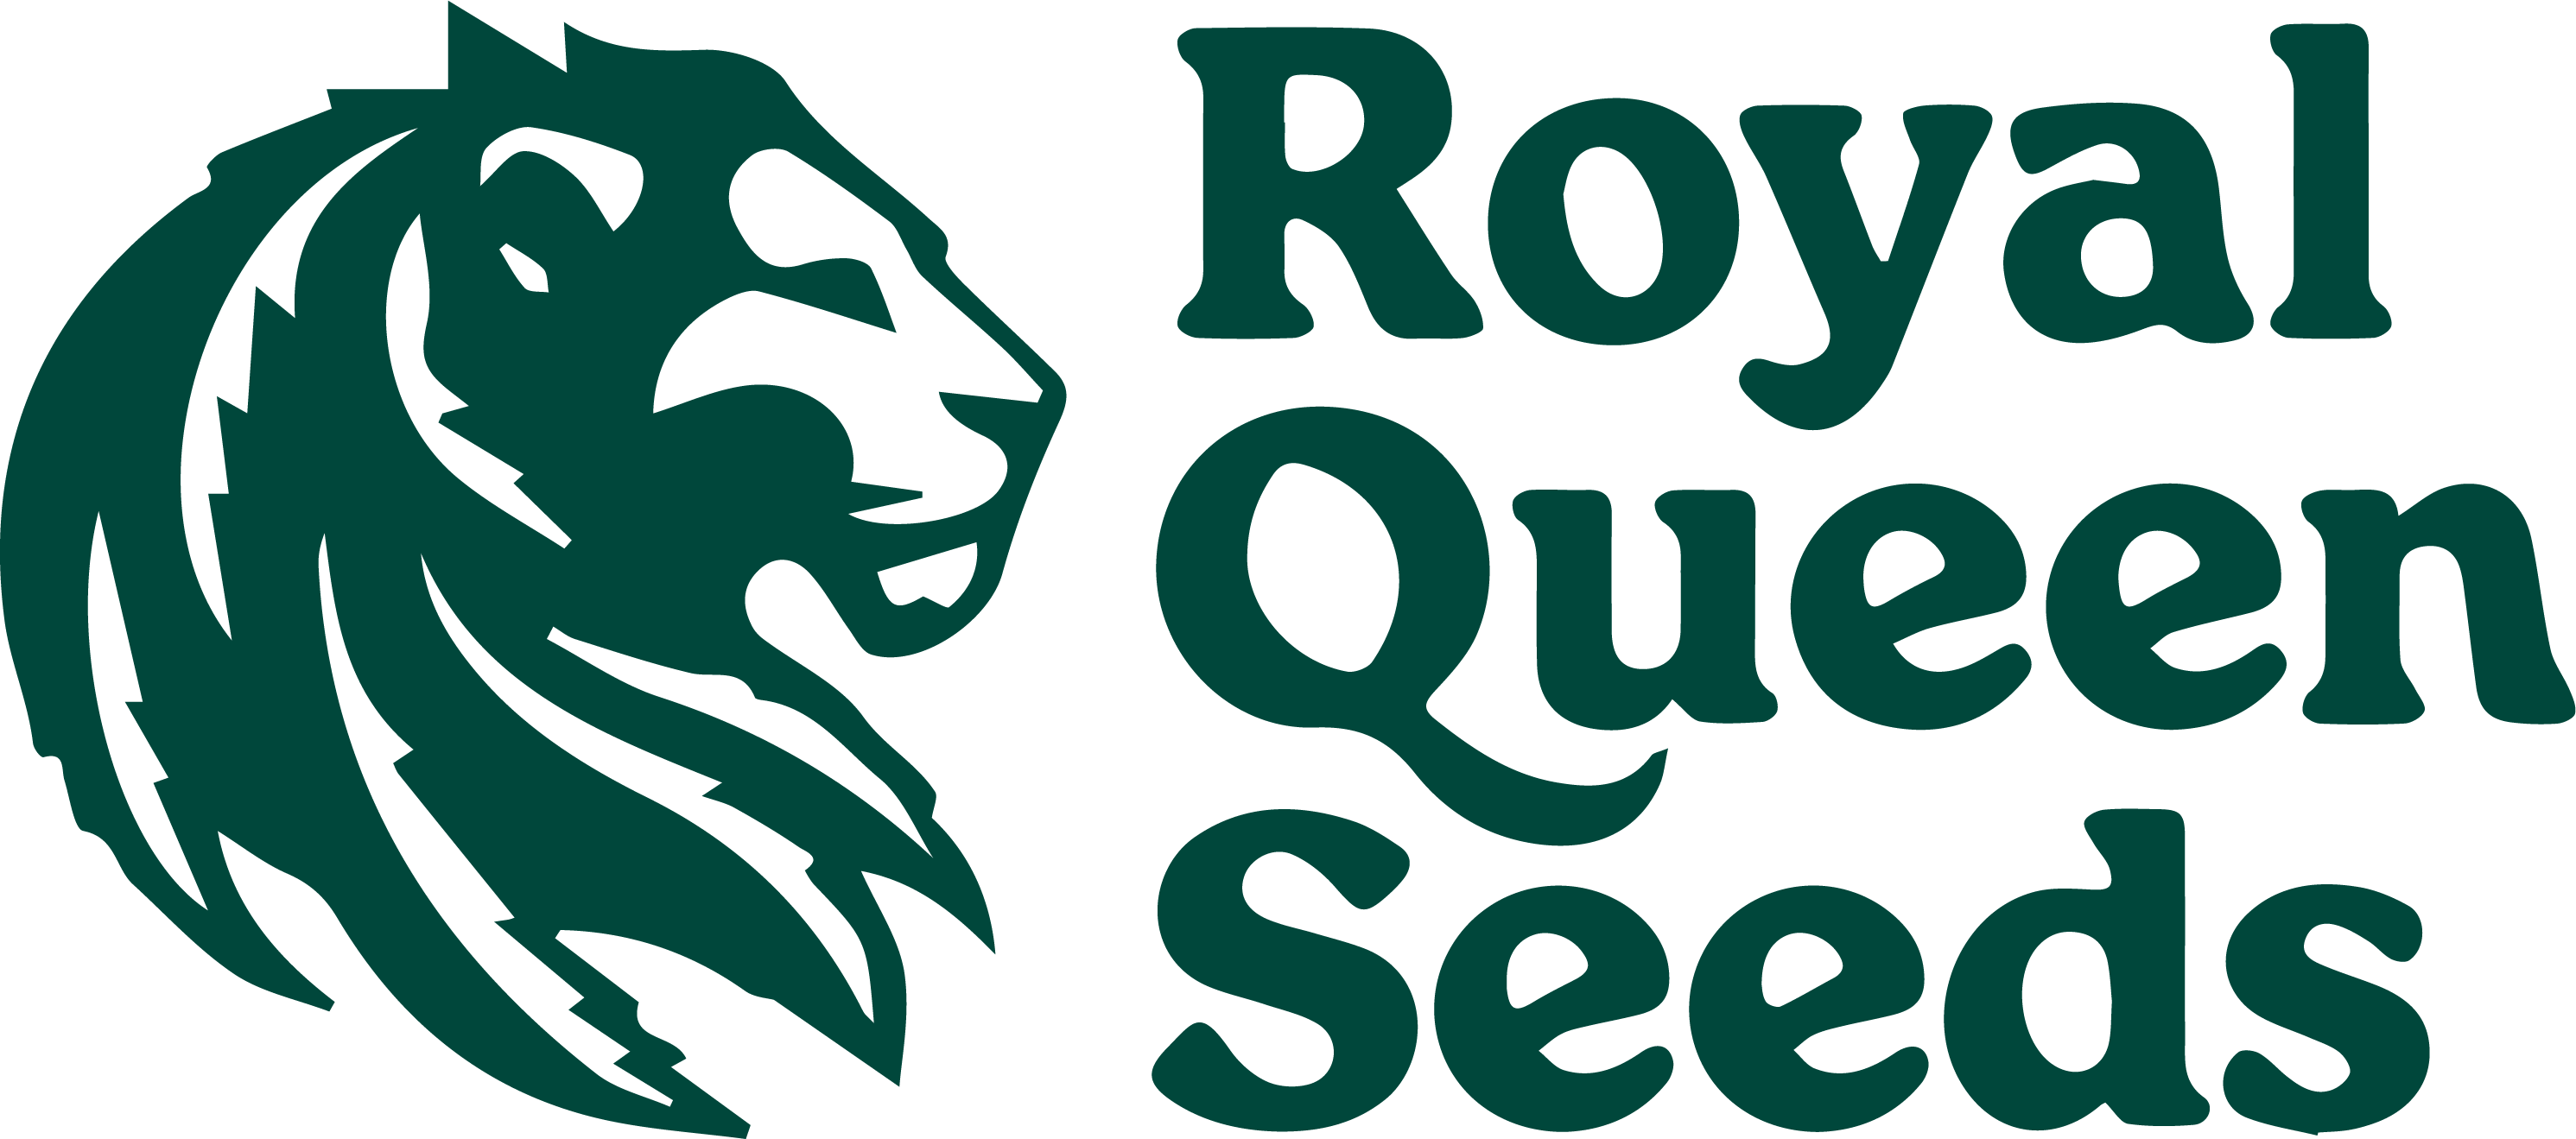 Royal Queen Seeds - Regular cannabis seeds - CBD Cannabis Seeds